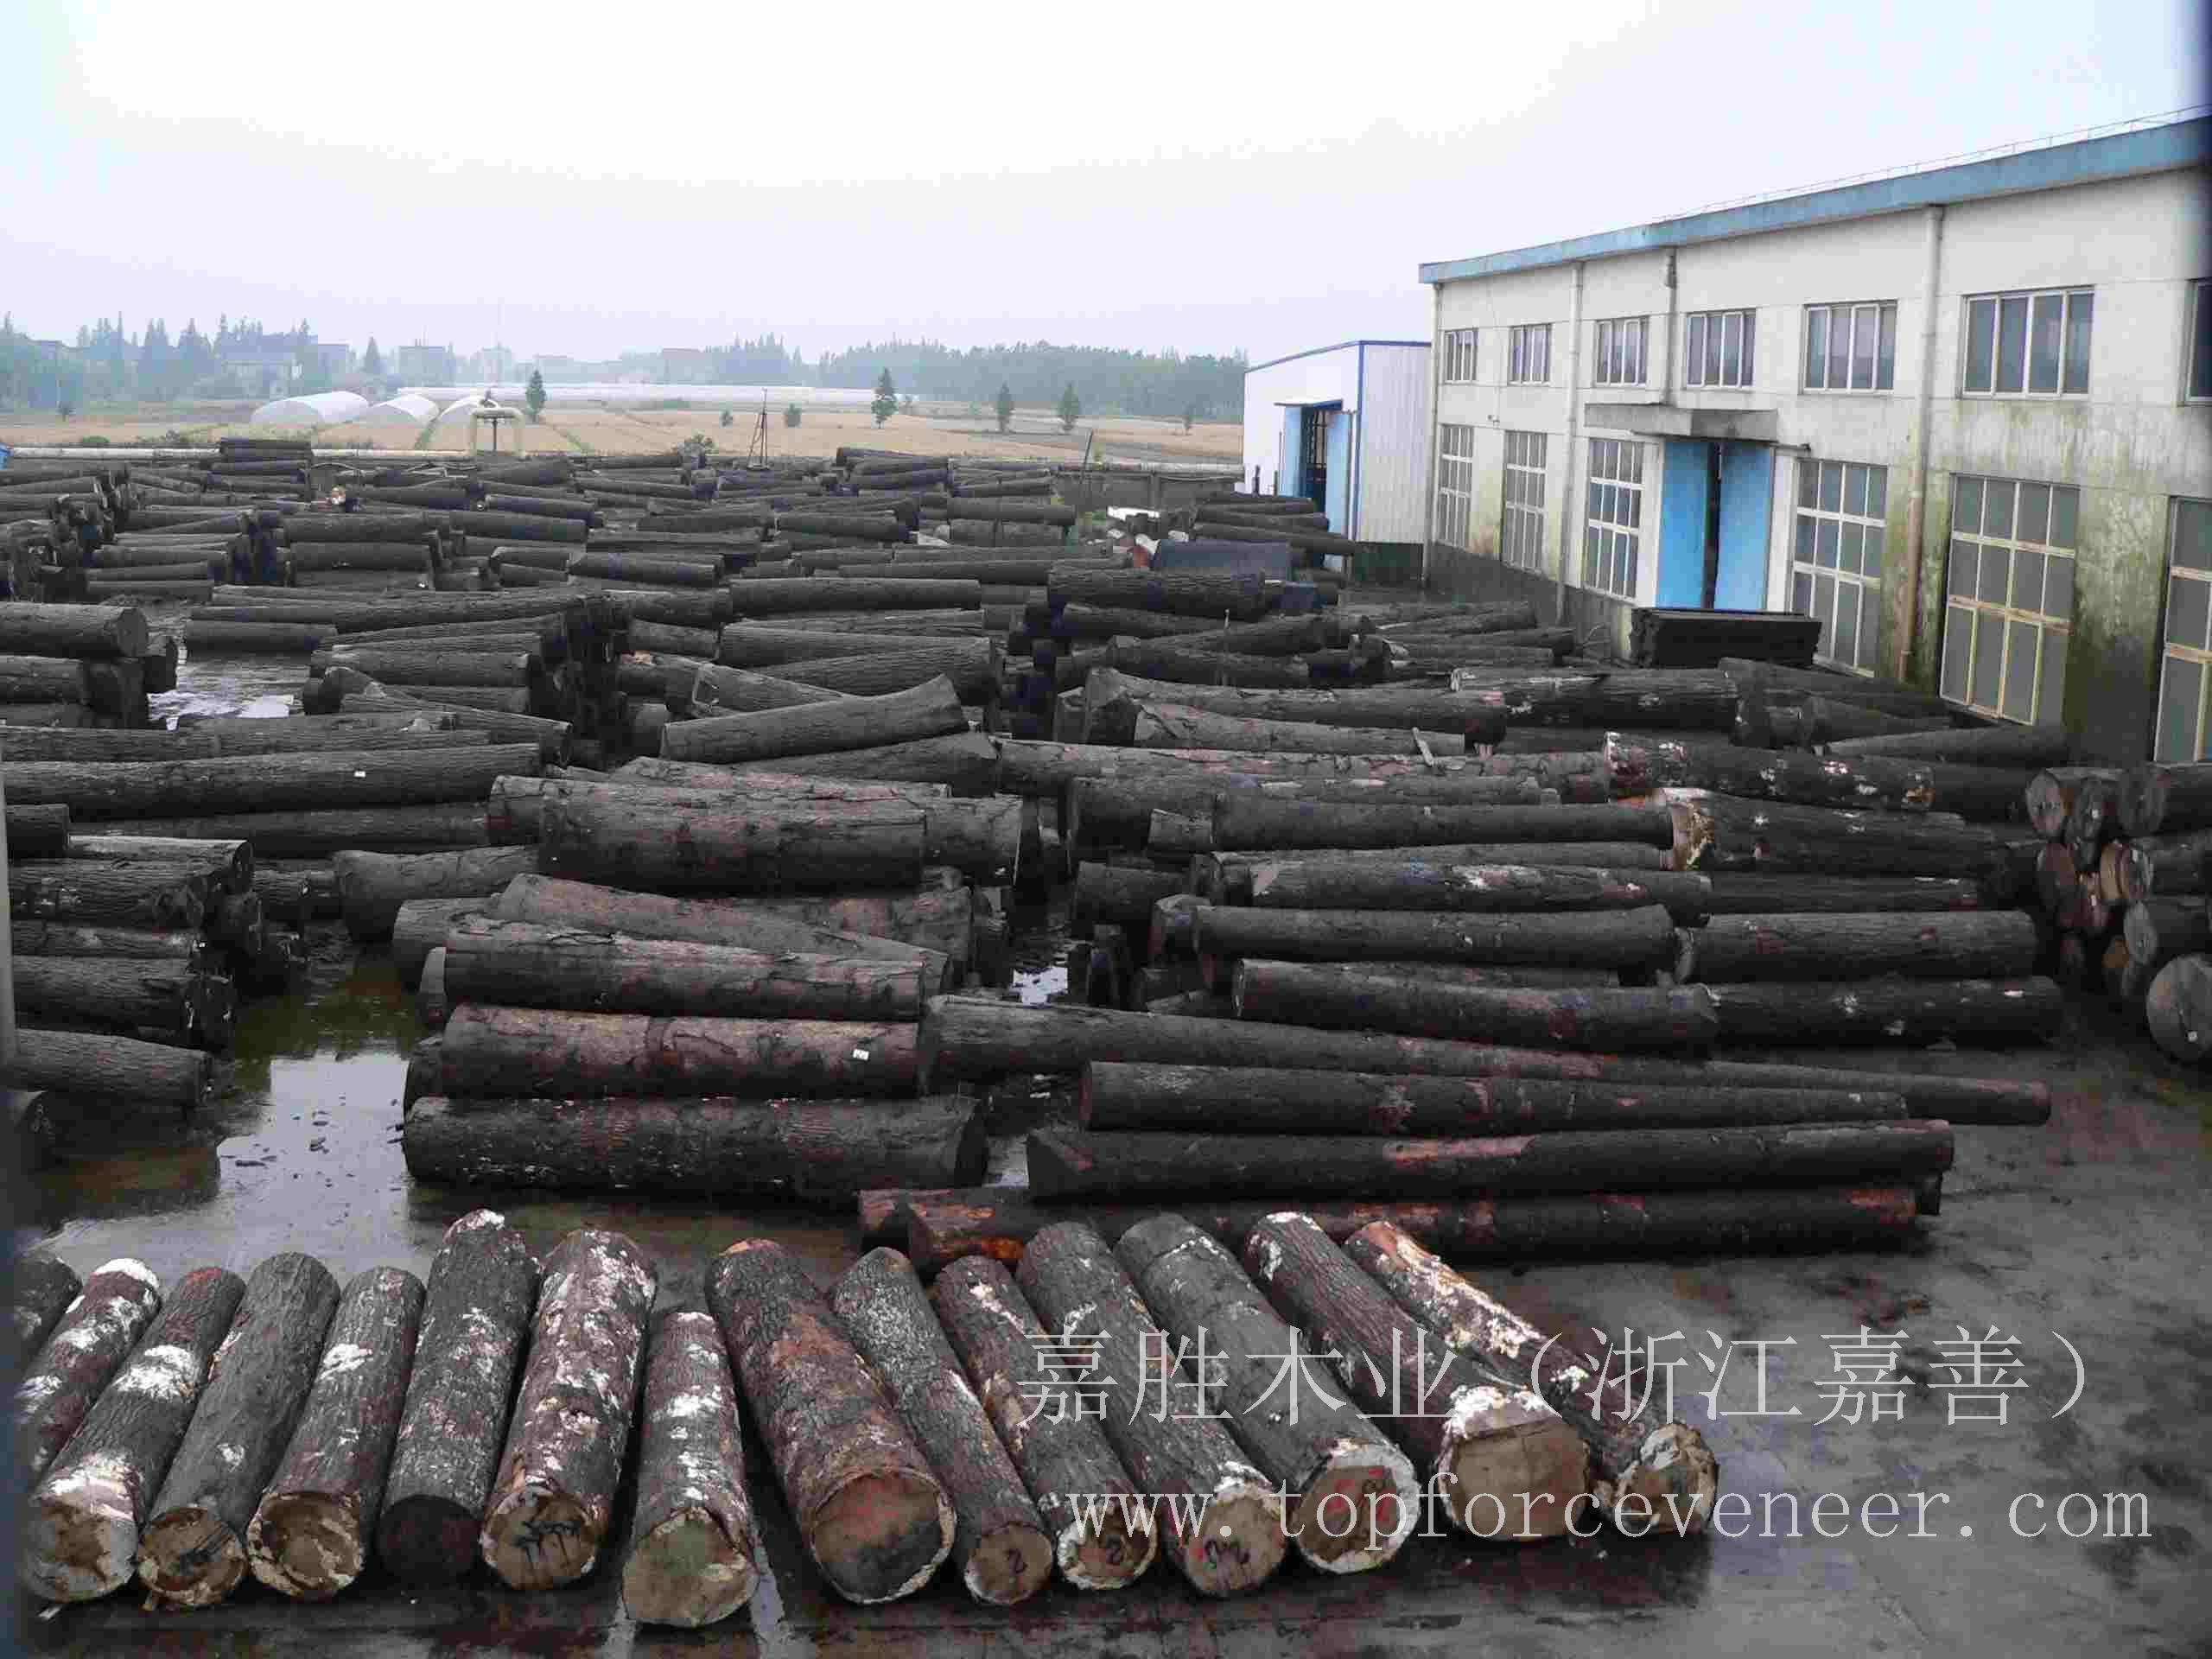 广东美国黑胡桃原木,GuangDong American Walnut Logs,二面清,三面清锯切级,三面清旋切级和四面清刨切级,锯